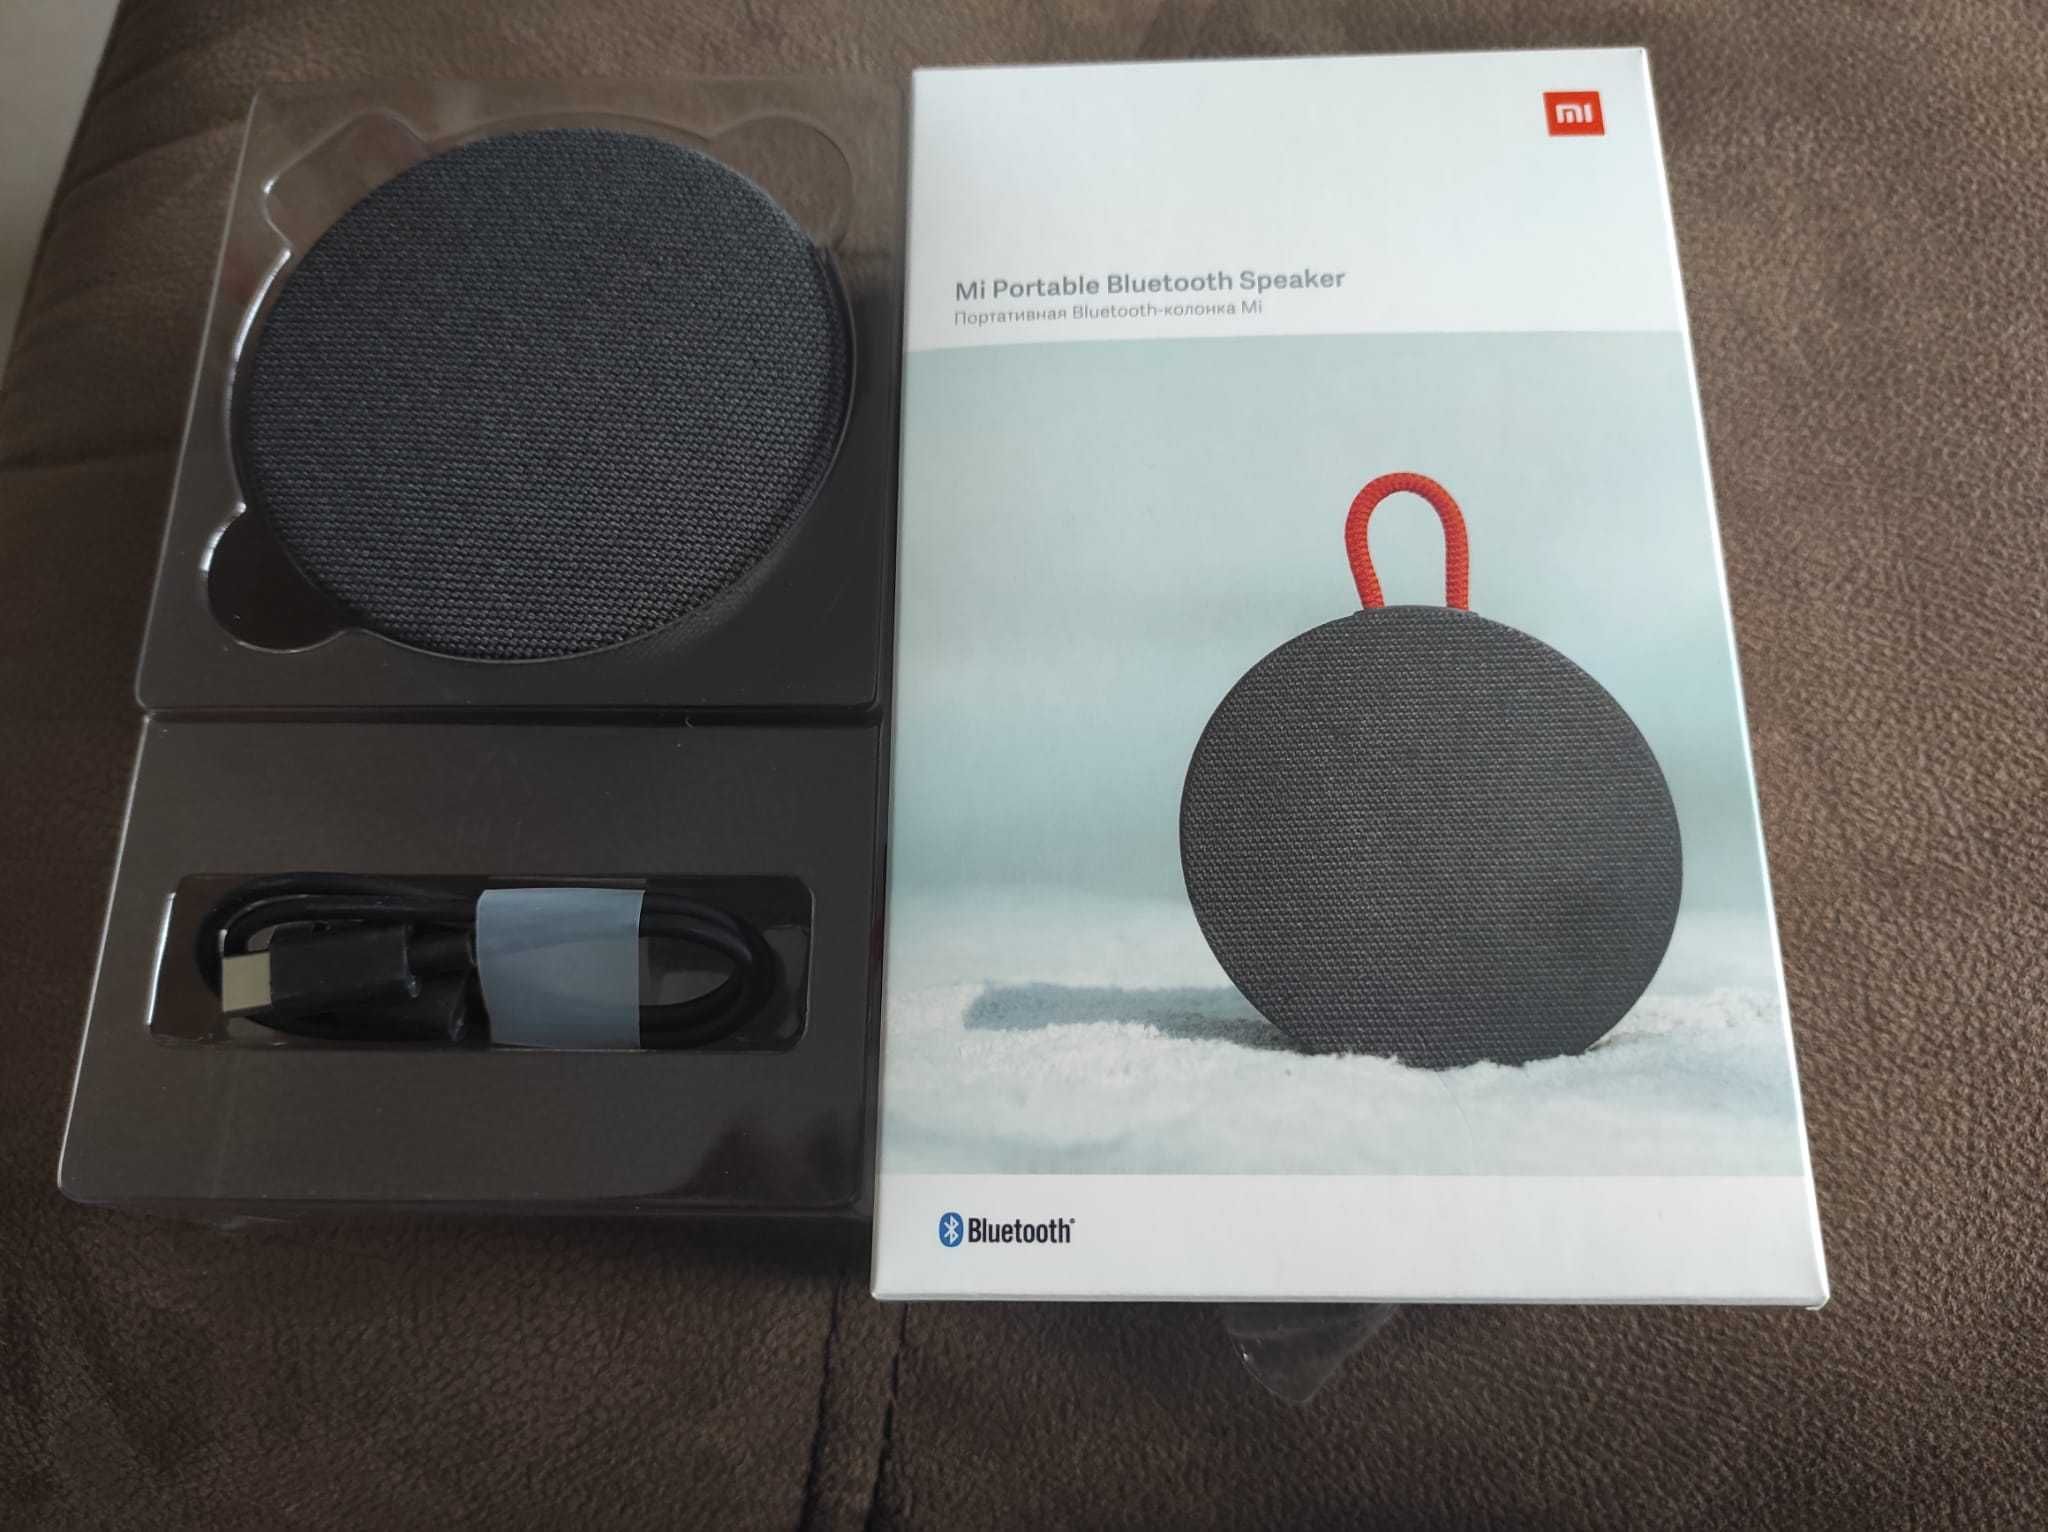 MI Portable Bluetooth Speaker XIAOMI, novo com caixa